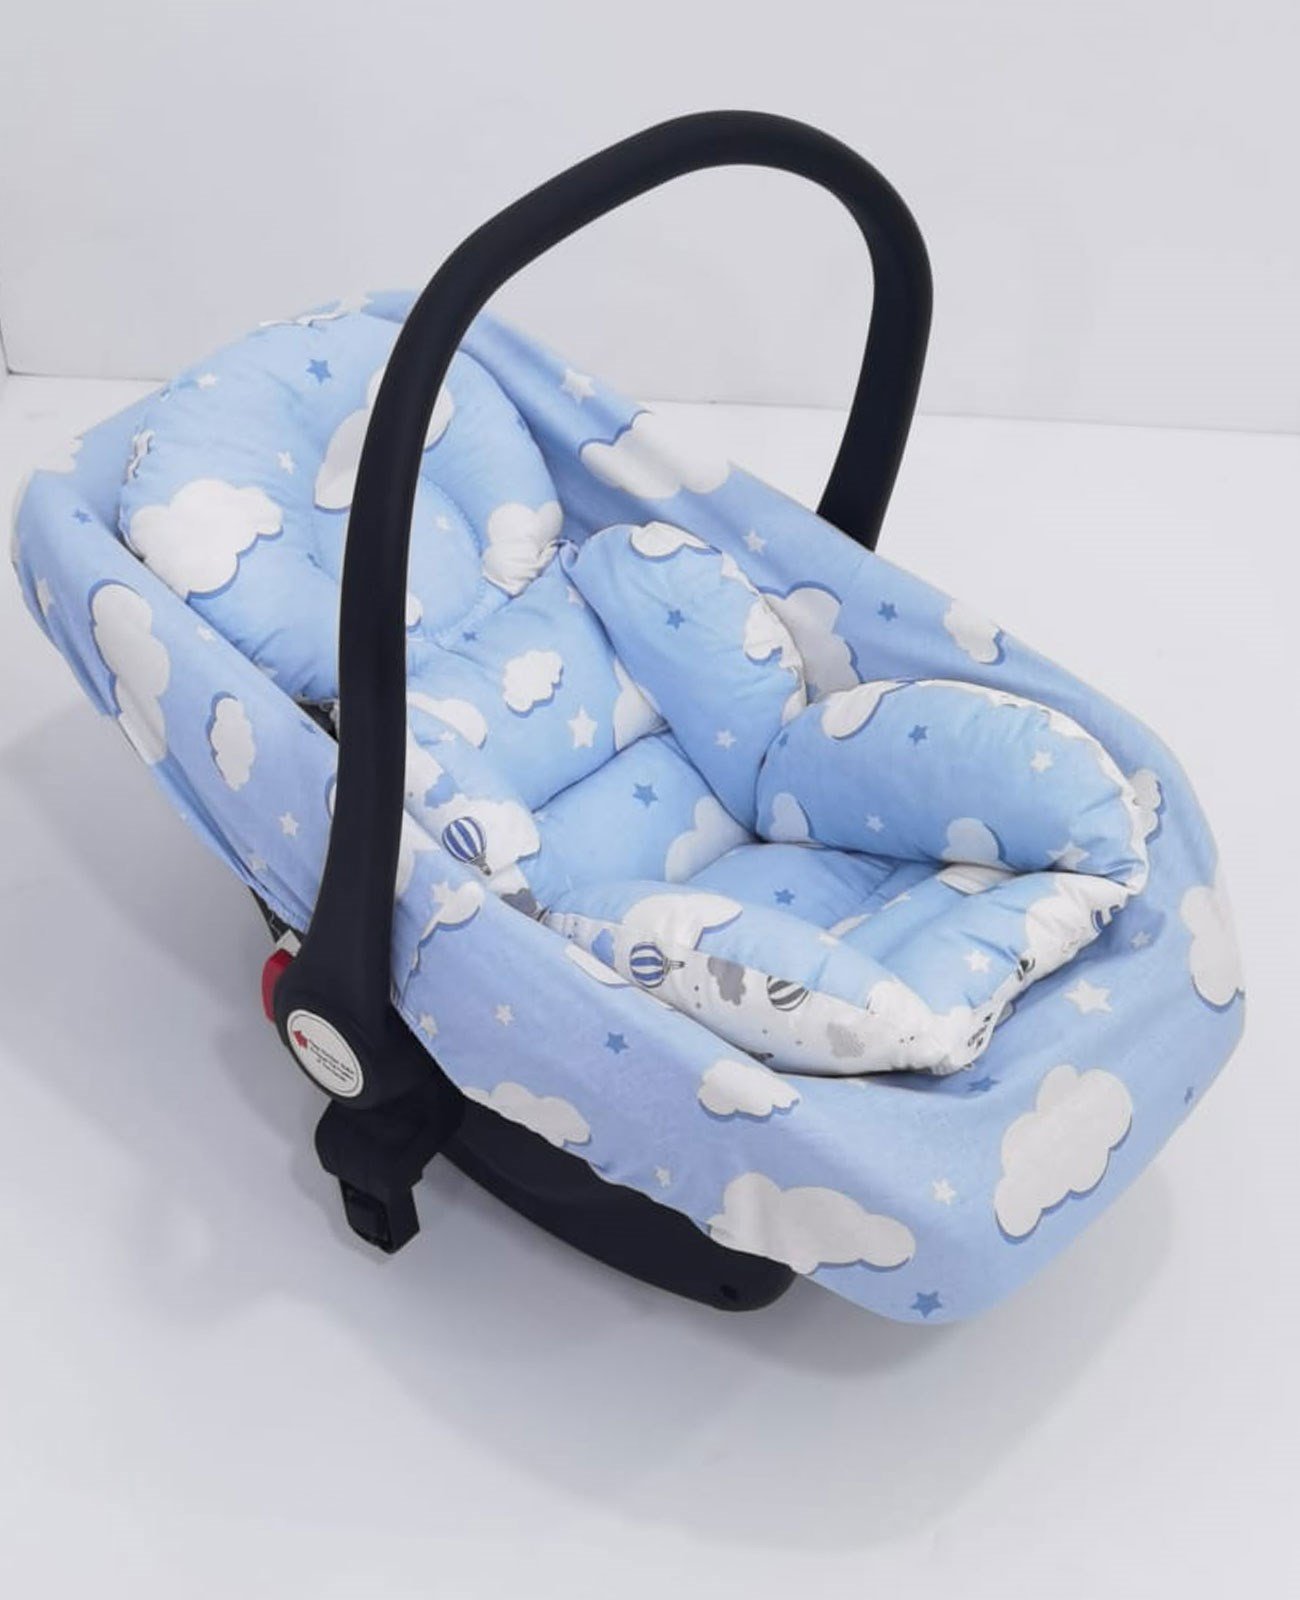 Bebek Puset Minderi, bebekler için kullanılan %100 pamuklu kumaş, araba ve  puset minderi